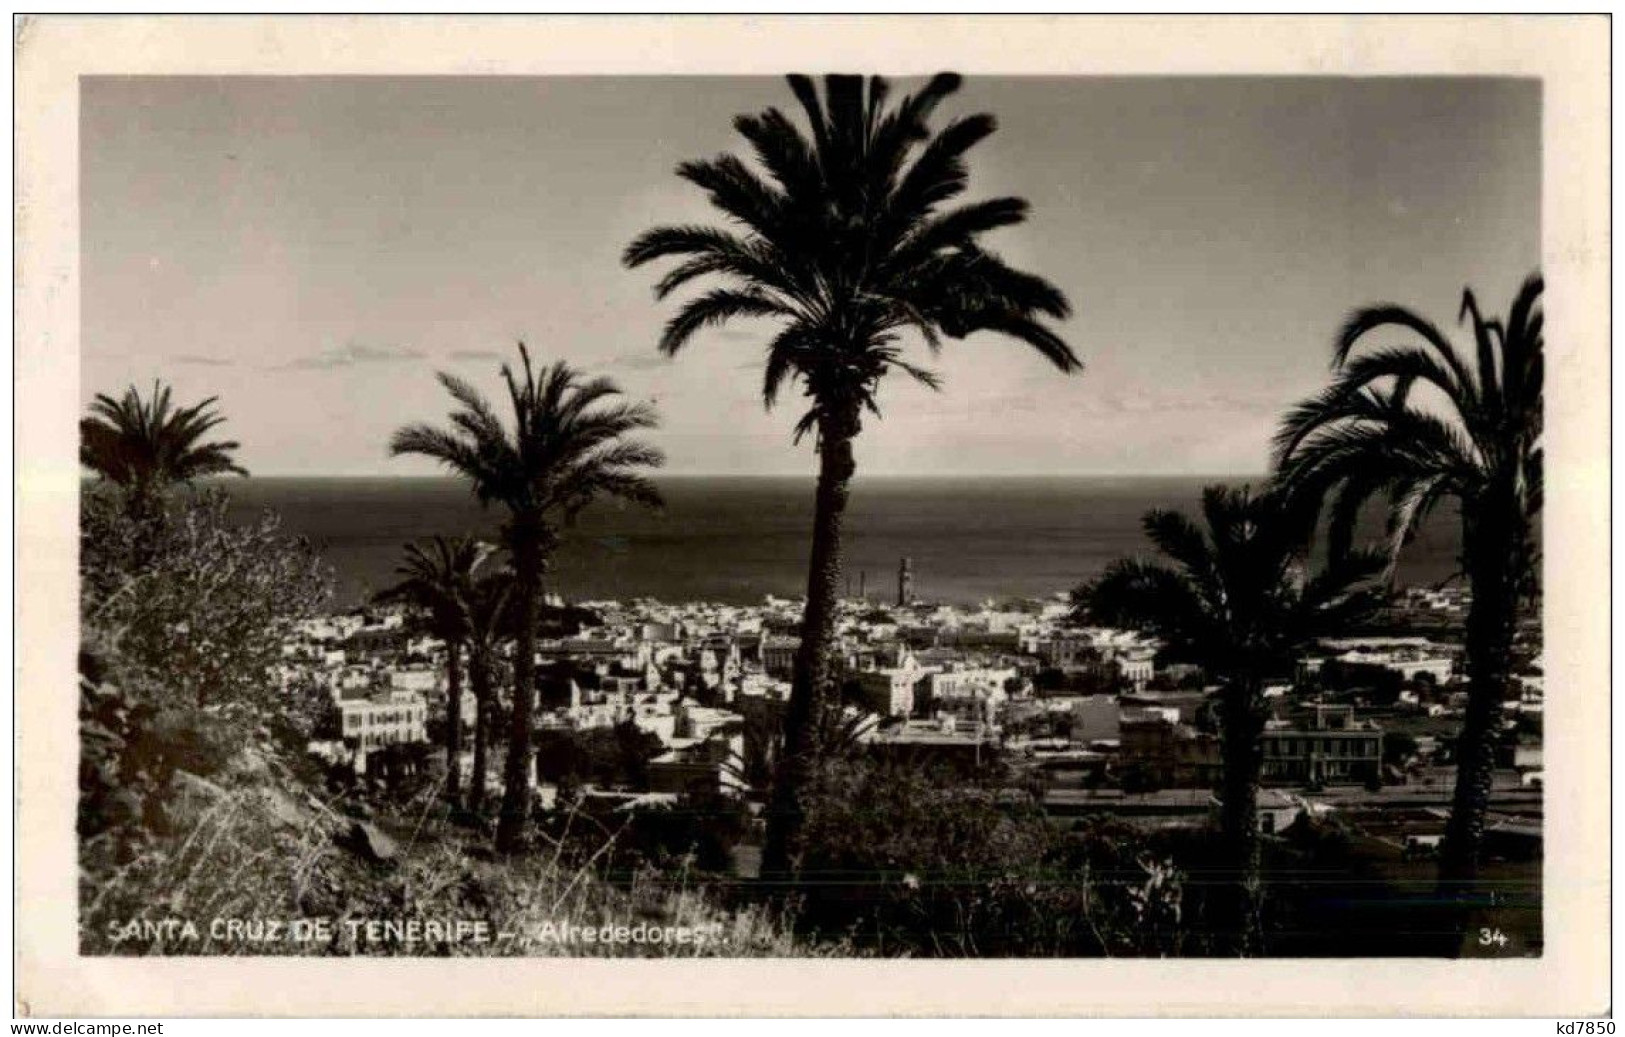 Santa Cruz De Tenerife - Alrededores - Tenerife